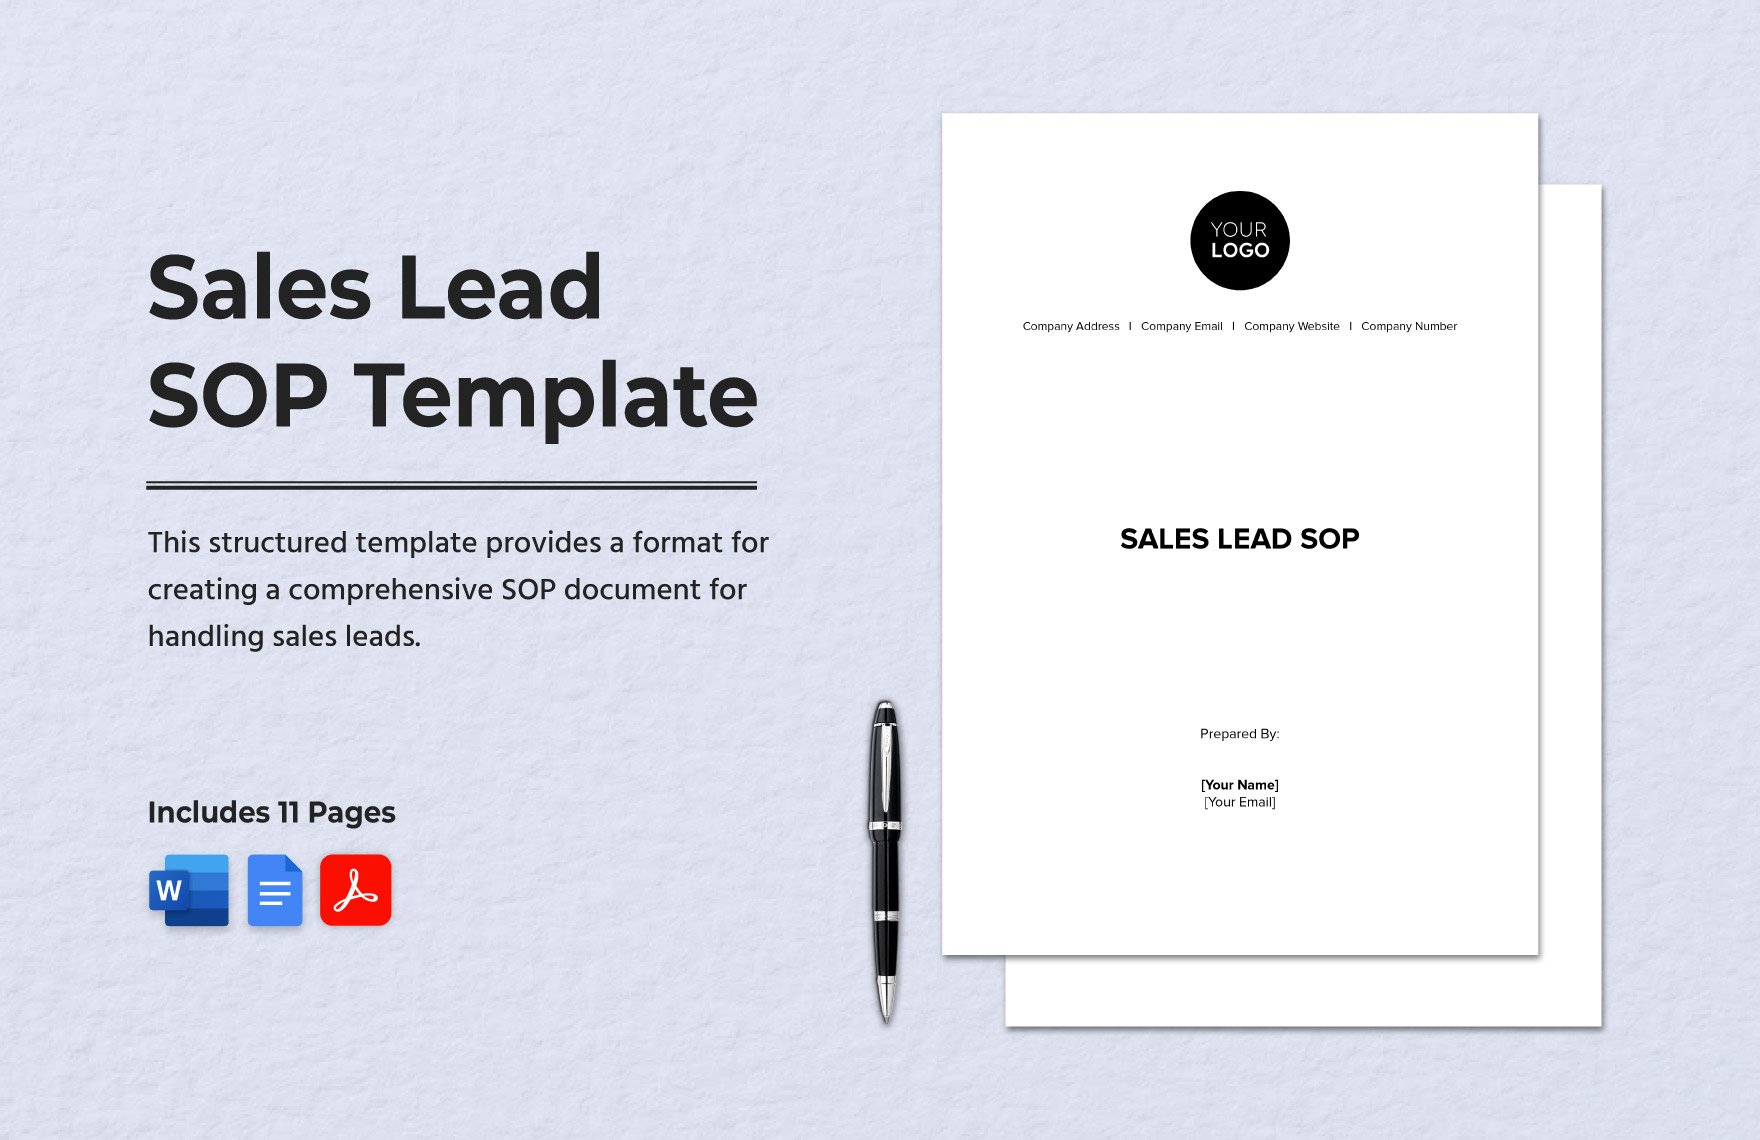 Sales Lead SOP Template